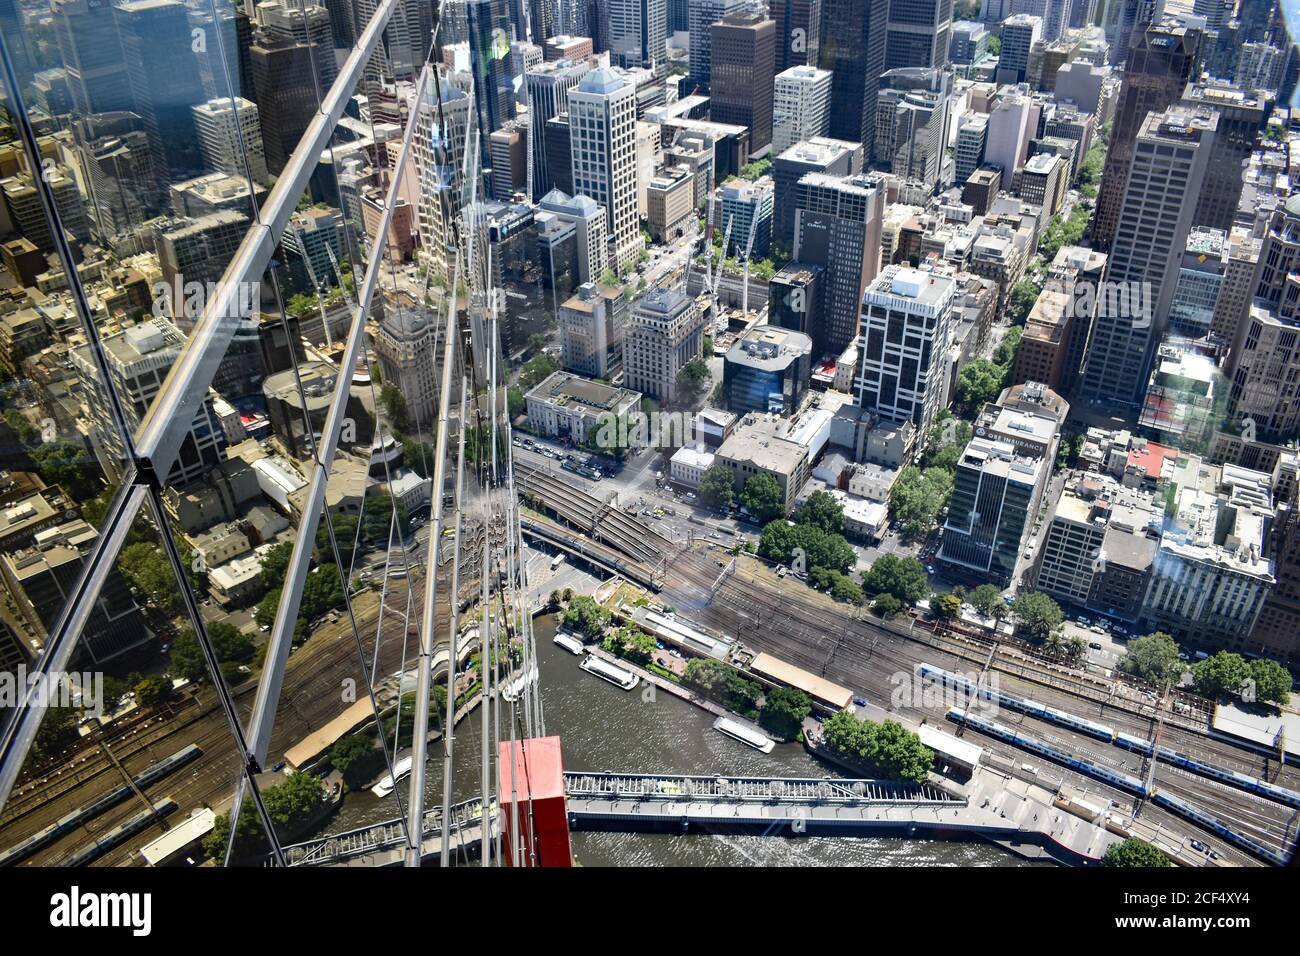 Le centre-ville de Melbourne se reflète dans le verre teinté d'or de la tour Eureka. L'horizon de la ville est vu d'en haut à l'Eureka Skydeck 88. Banque D'Images